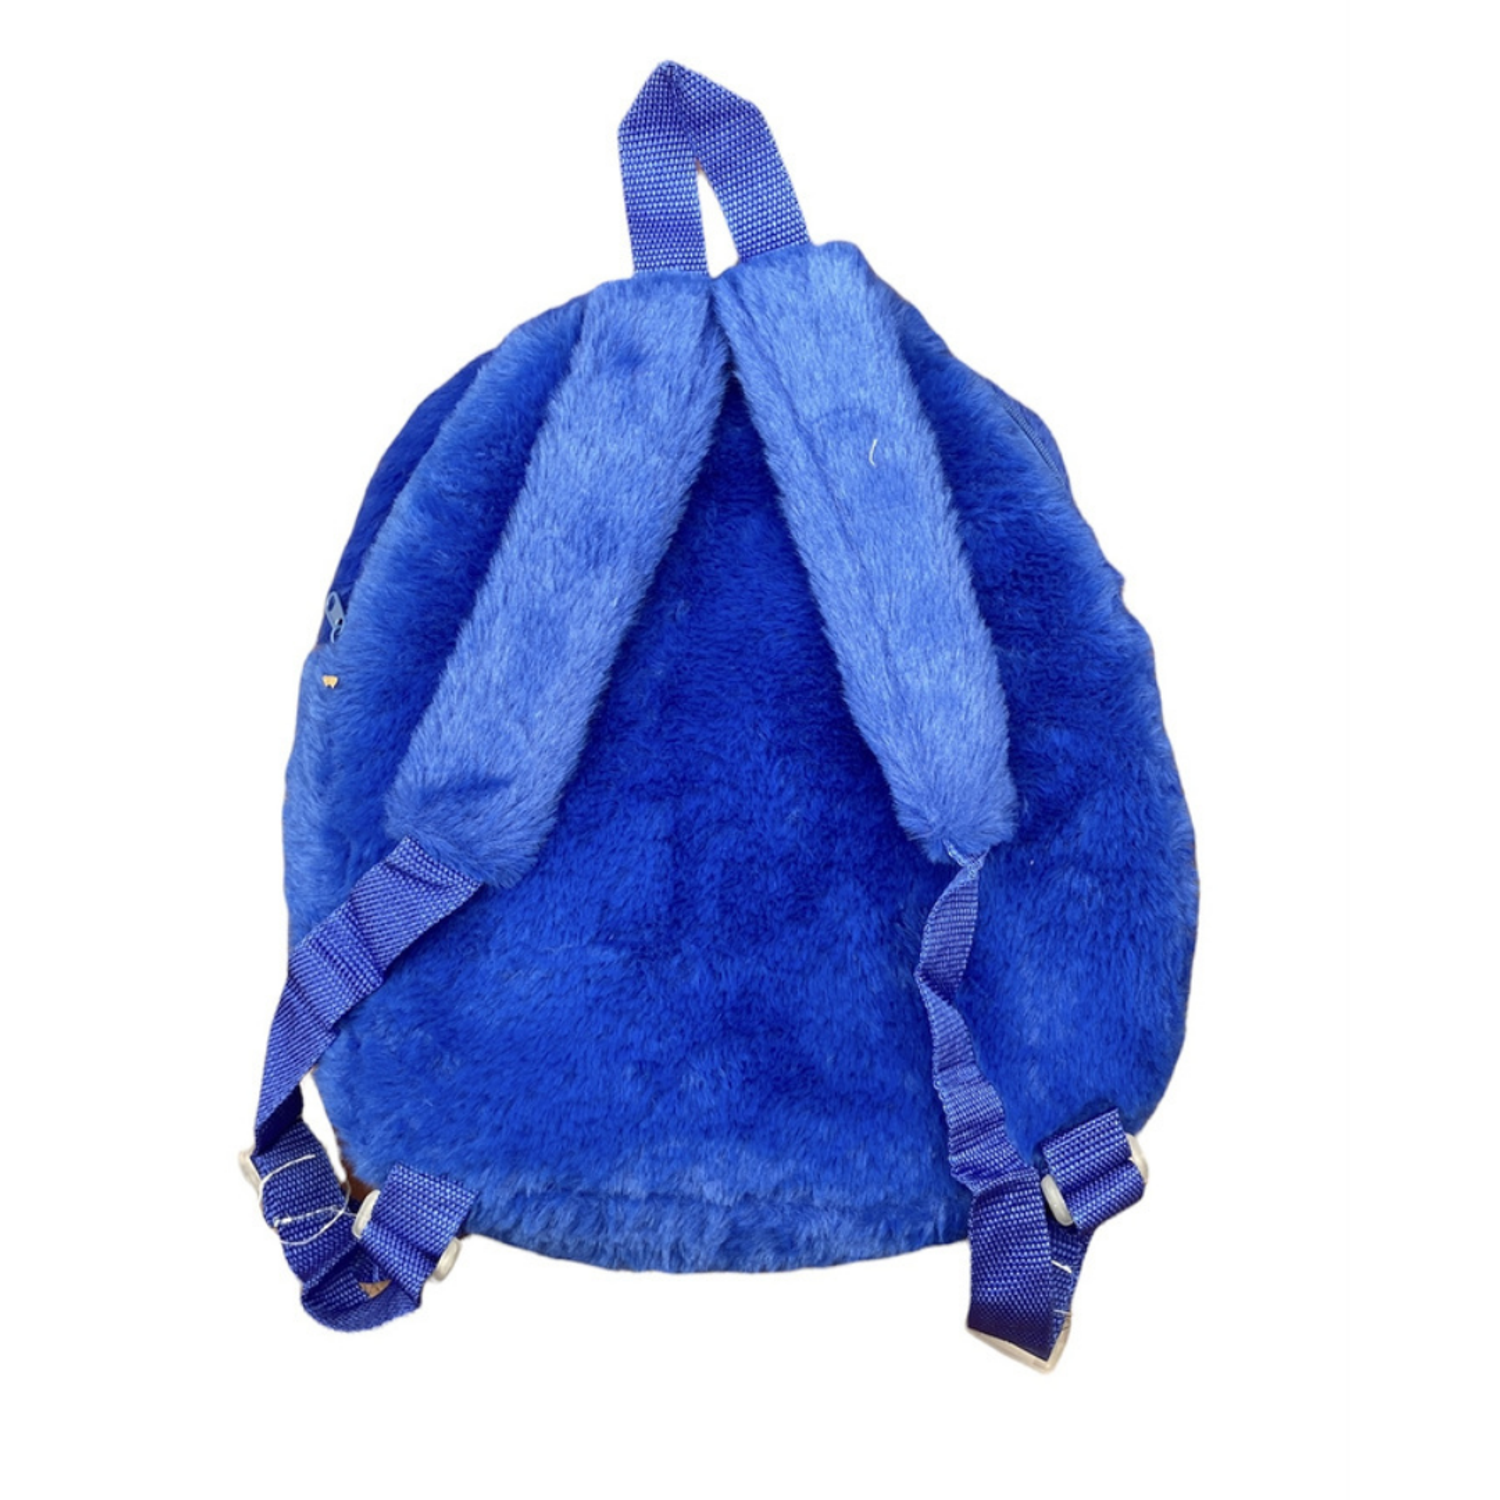 Мягкая игрушка-рюкзак синий Хаги Ваги BalaToys - фото 2